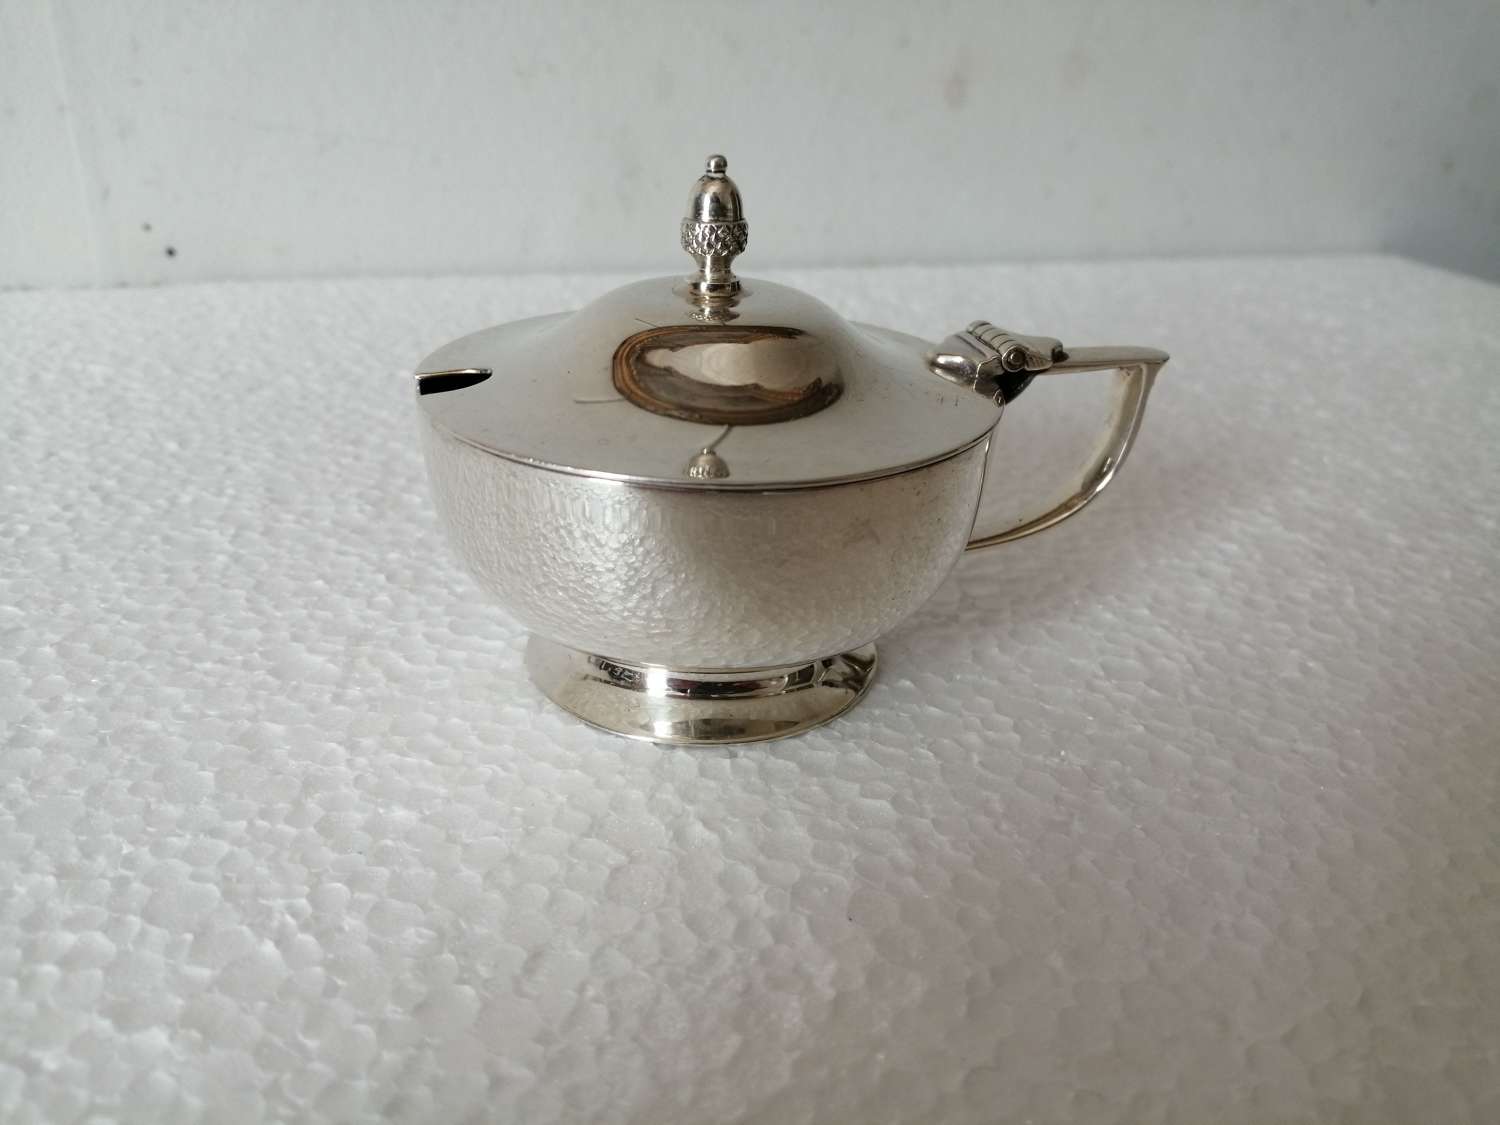 A stylish silver mustard pot